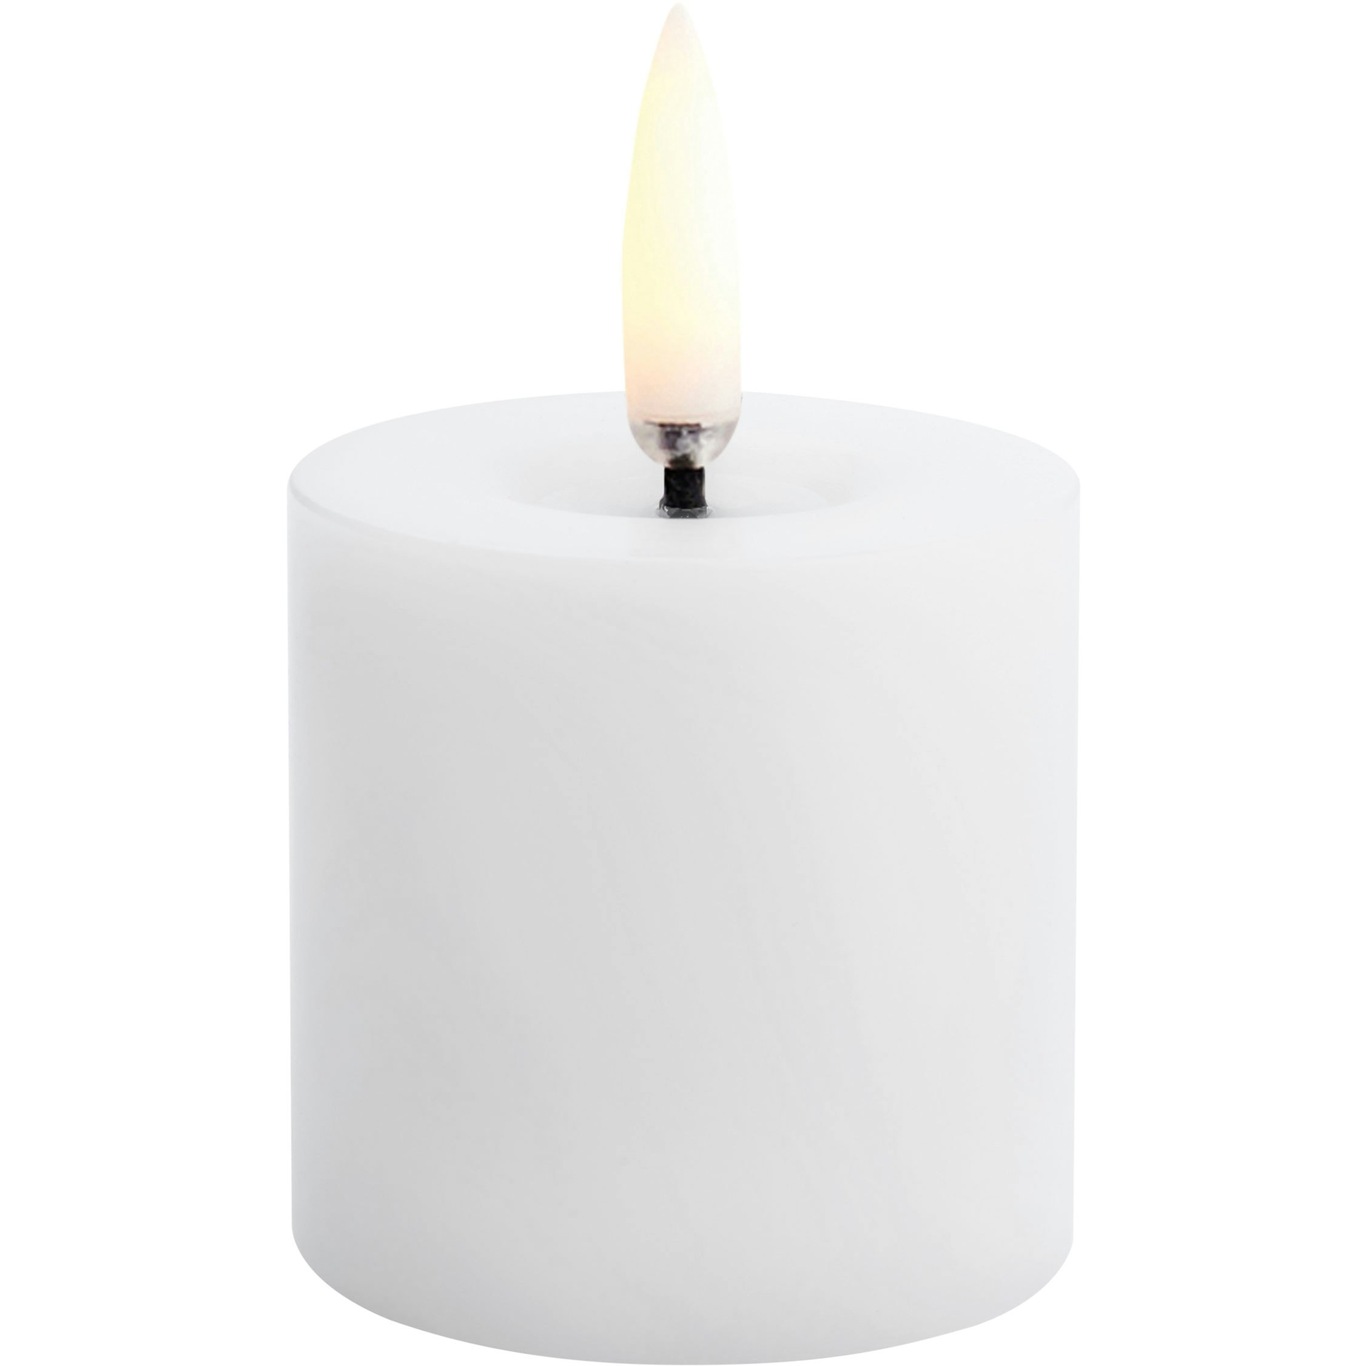 LED Kubbelys Smeltet Nordic White, 5x4,5 cm